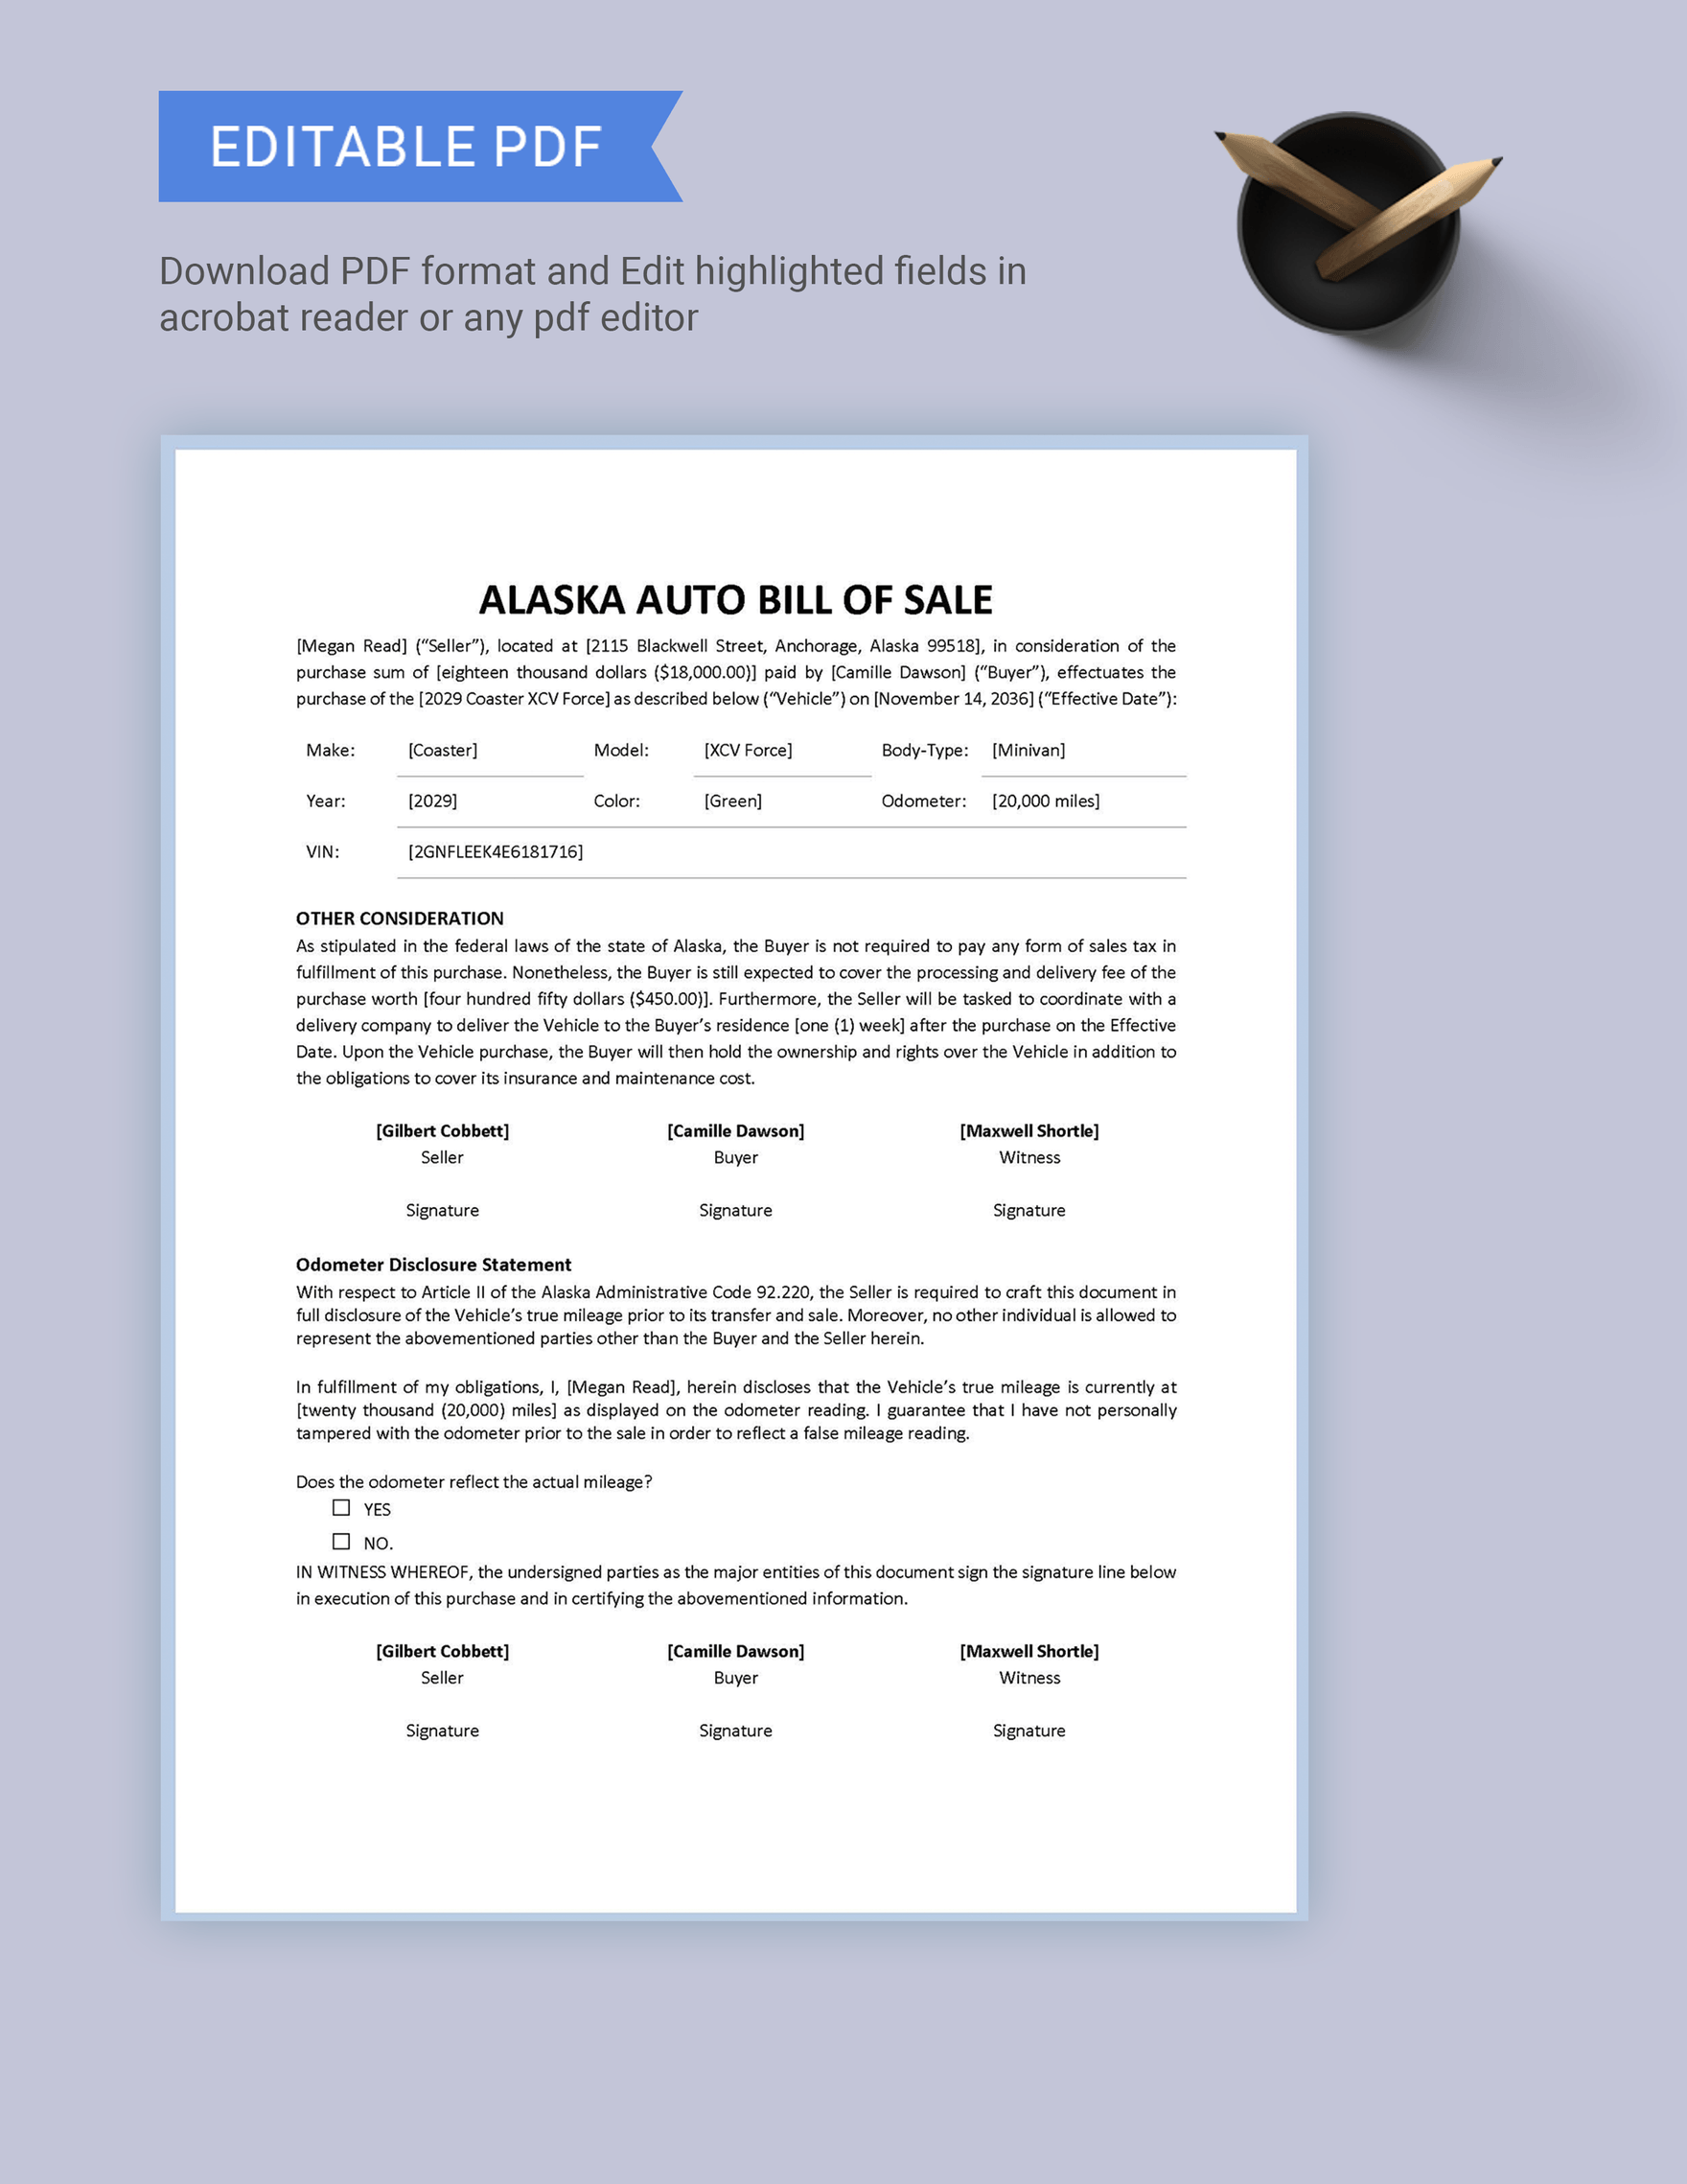 Alaska Auto Bill of Sale Form Template in Word PDF Google Docs